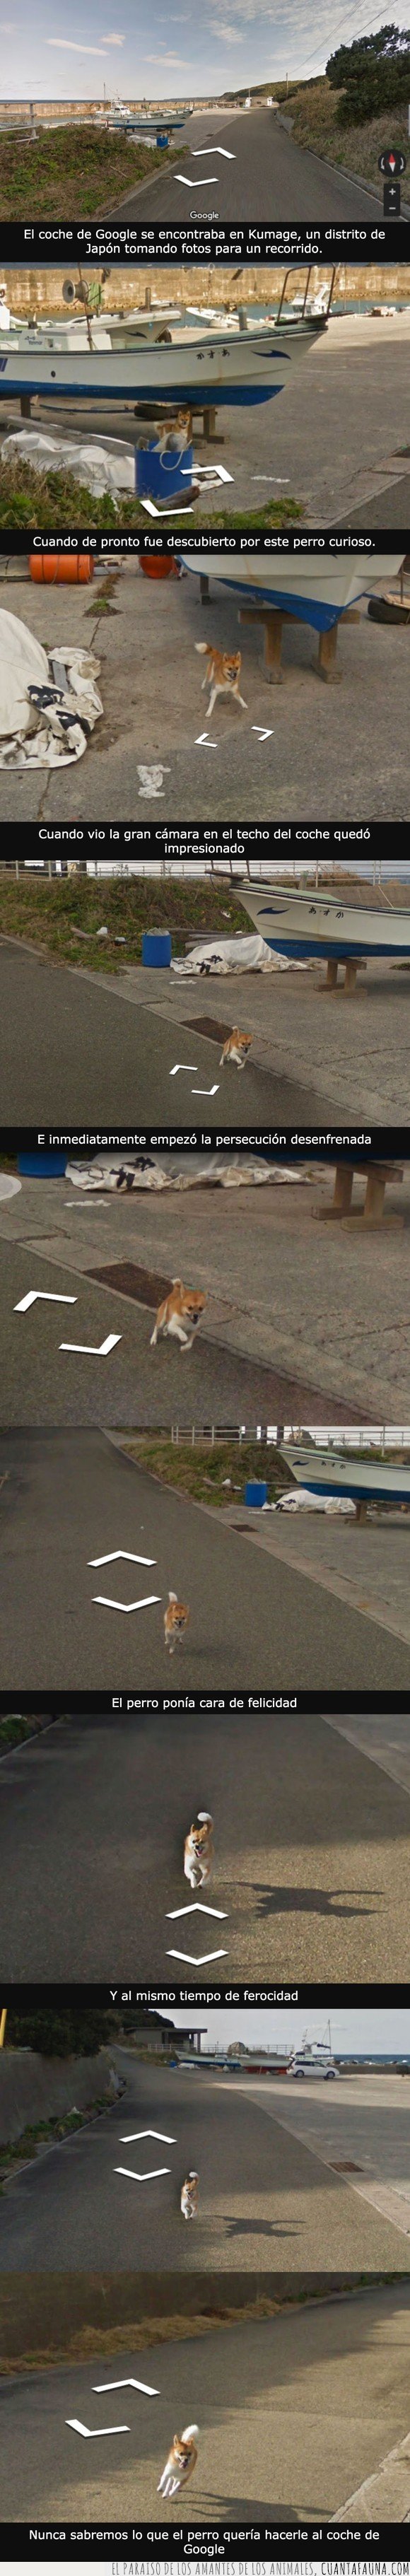 coche,google,perro,street view